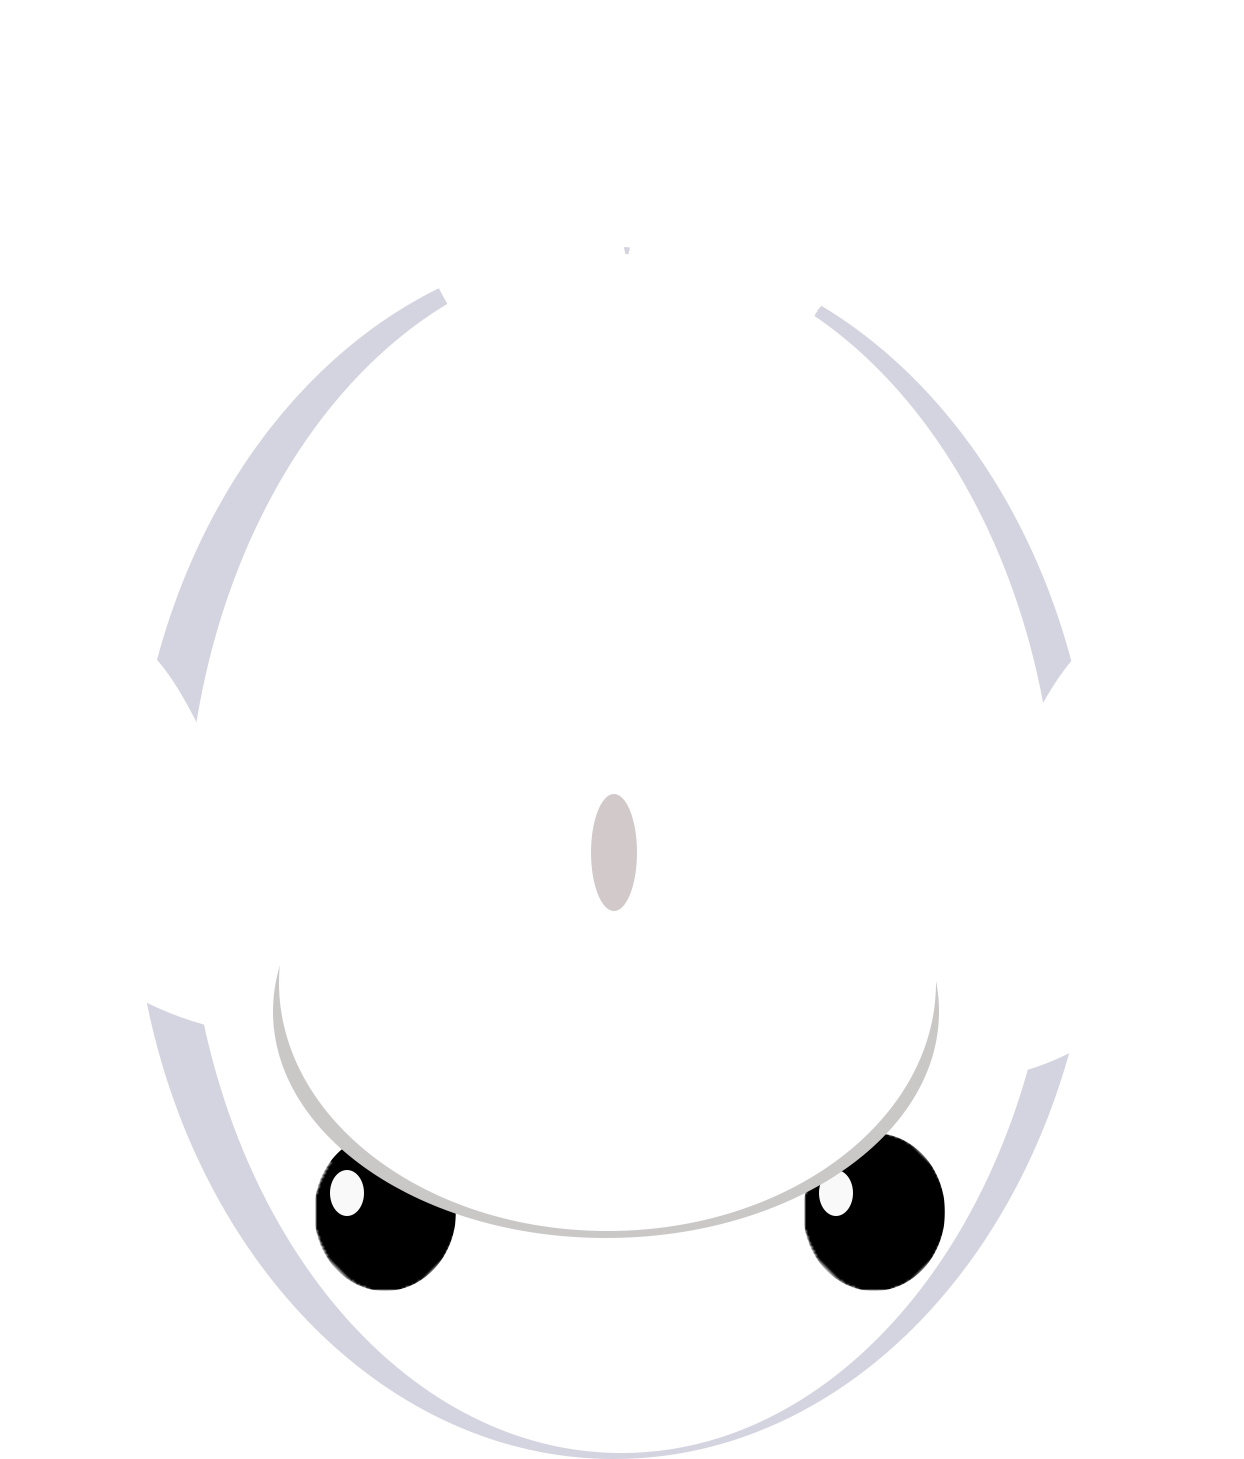 Beluga Whale Idea - Beluga Whale Idea (2100x1500)